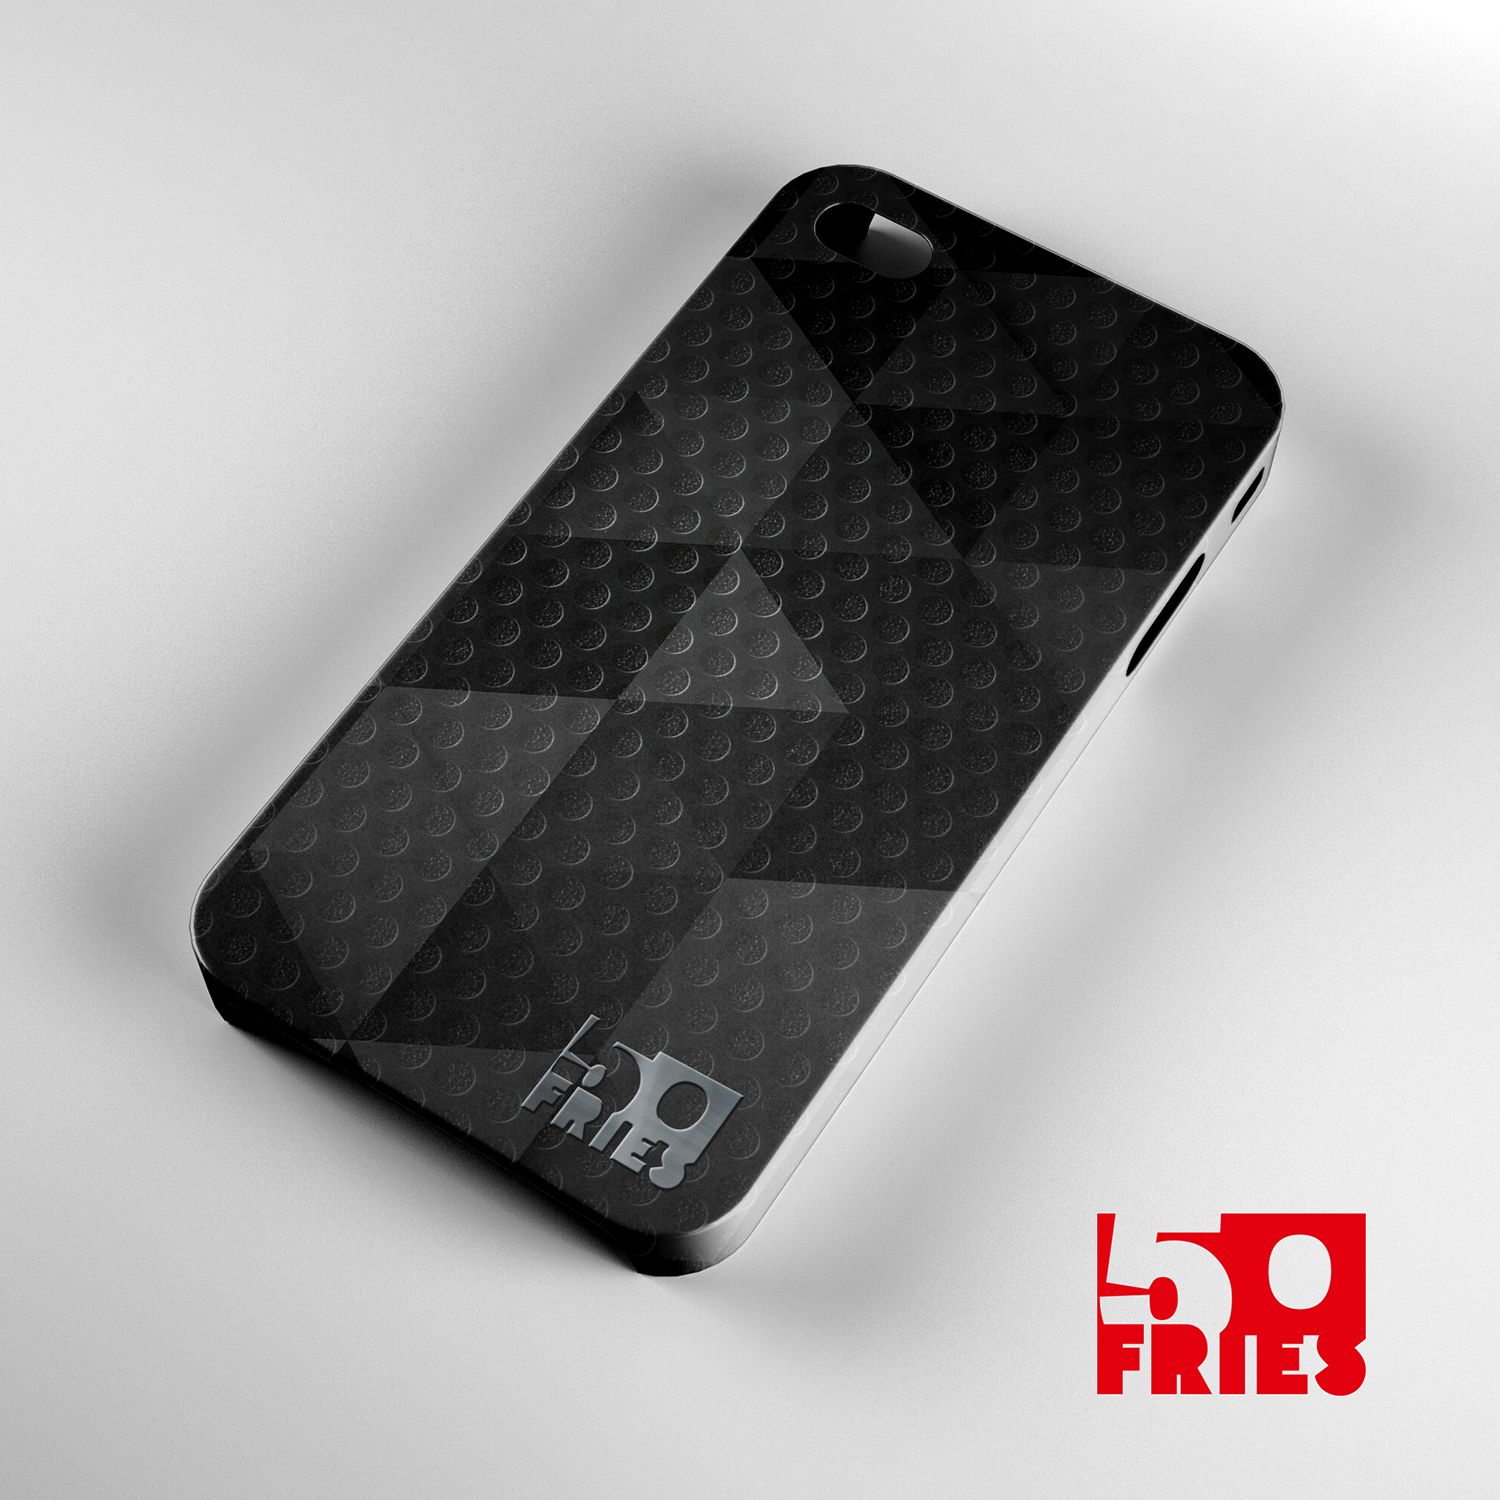 Логотип для бренда аксесуаров для сотовых телефонов 50fries - дизайнер funkielevis